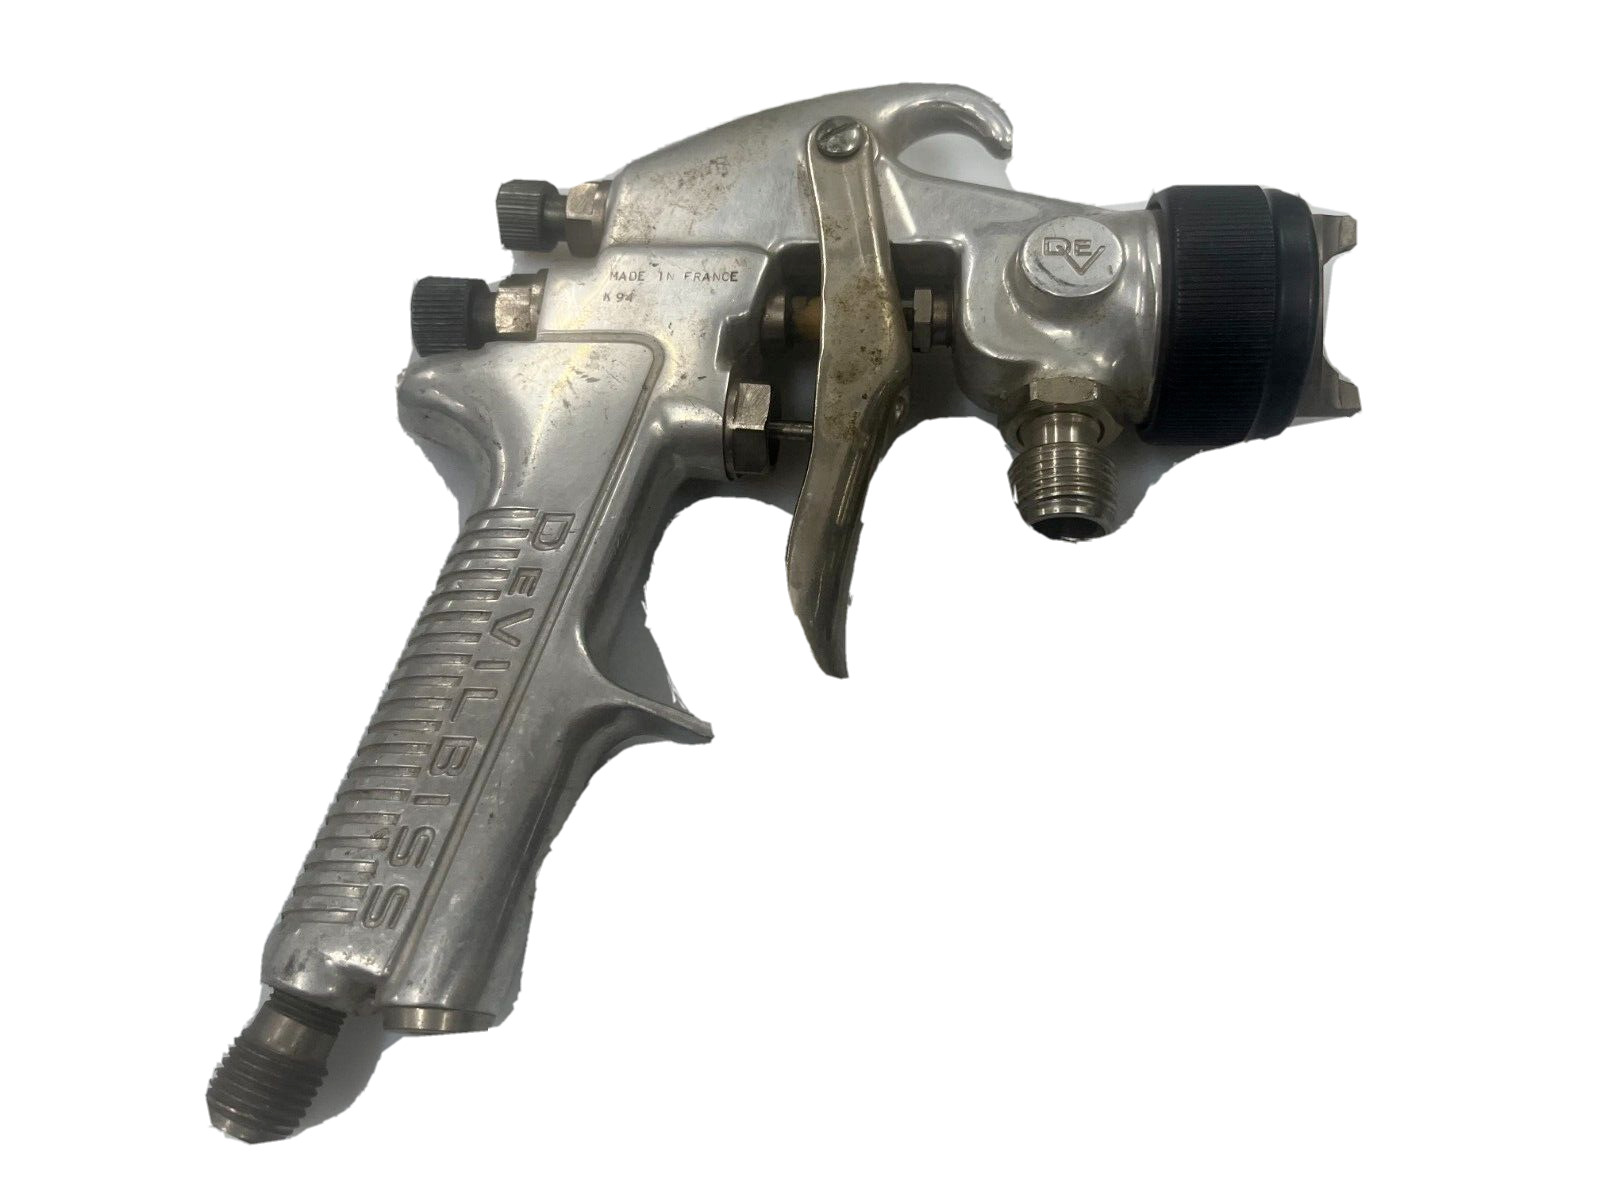 DEVILBISS MSA-512 Spray Gun with Tip No 799